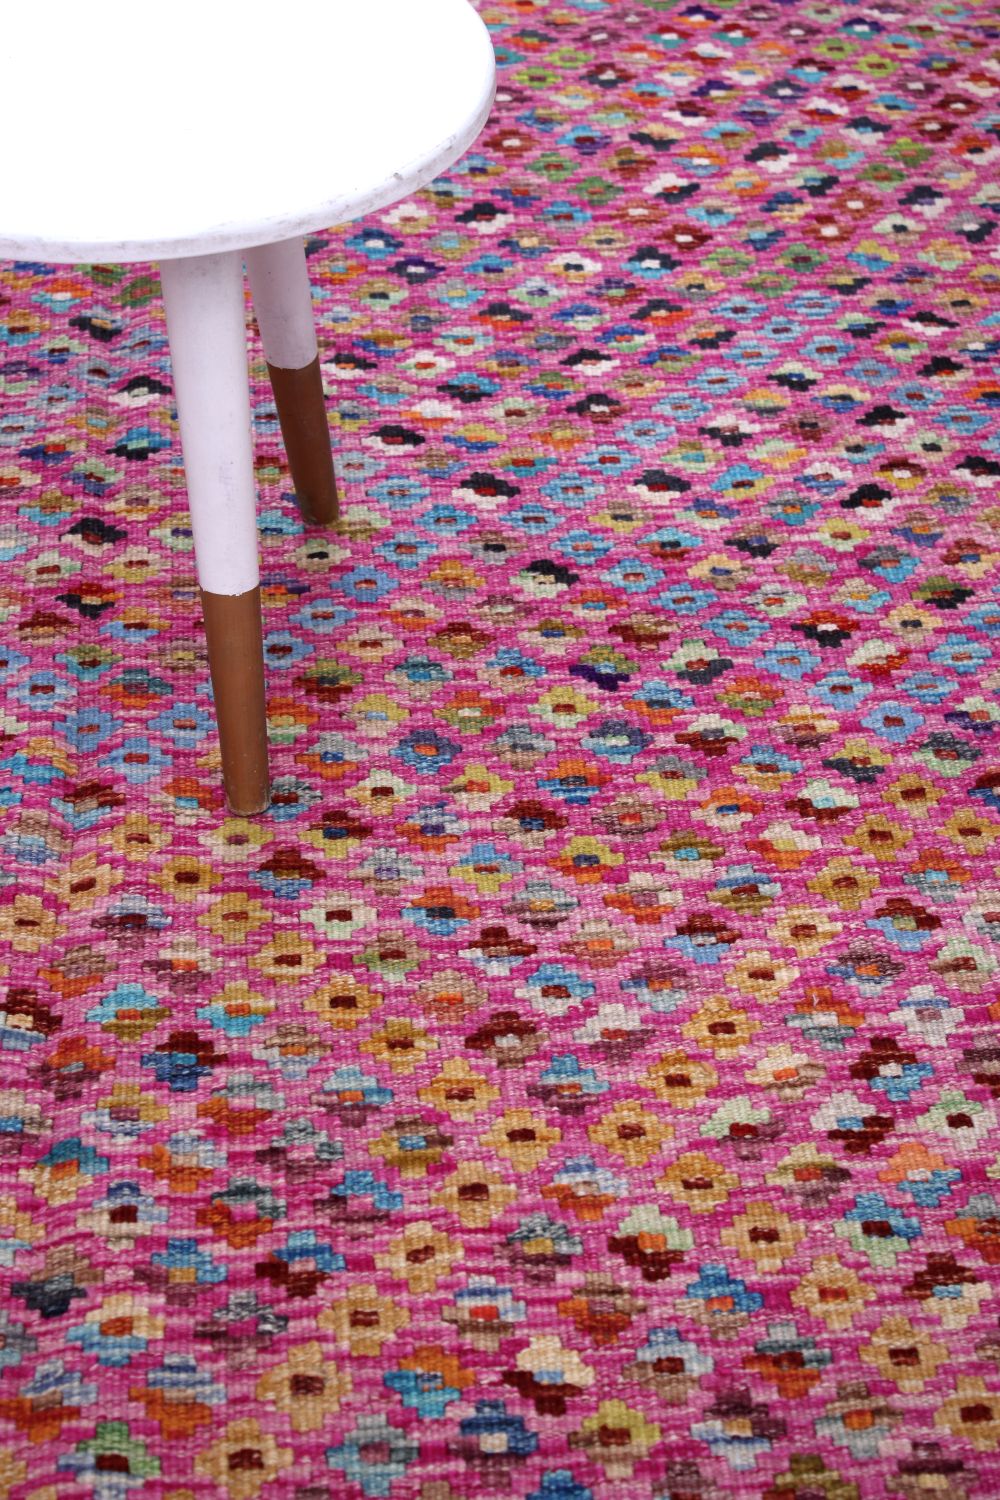 Kleurrijk Tapijt Laagpolig Handgeweven Wollen Vloerkleed - Omid Afghan Kelim 199x165